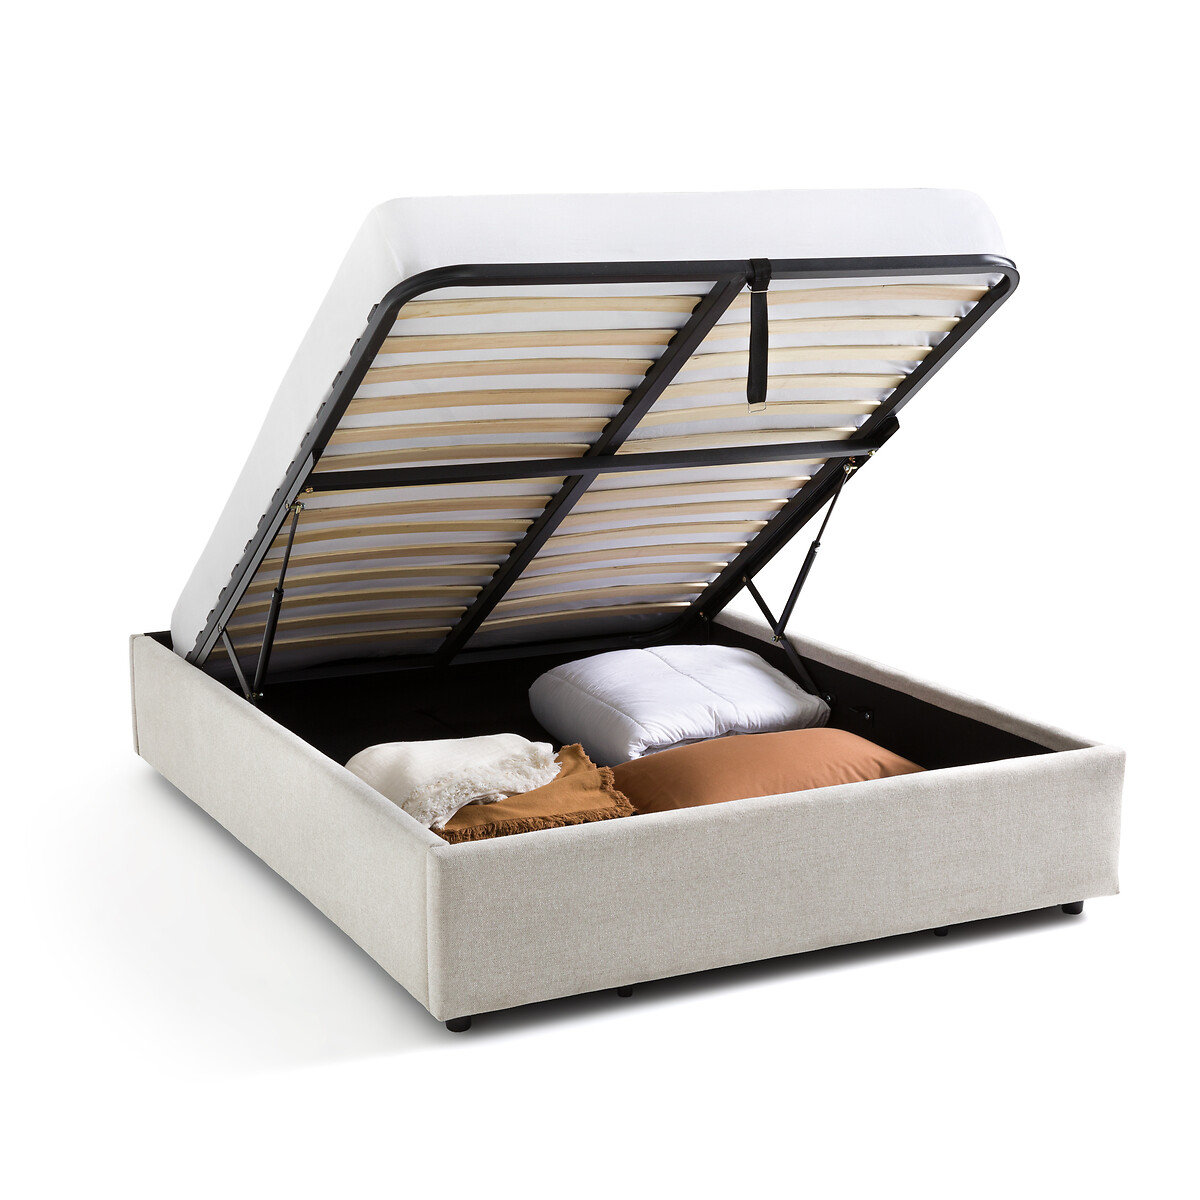 Кровать С реечным дном и ящиком внутри Papilla 160 x 200 см бежевый LaRedoute, размер 160 x 200 см - фото 3